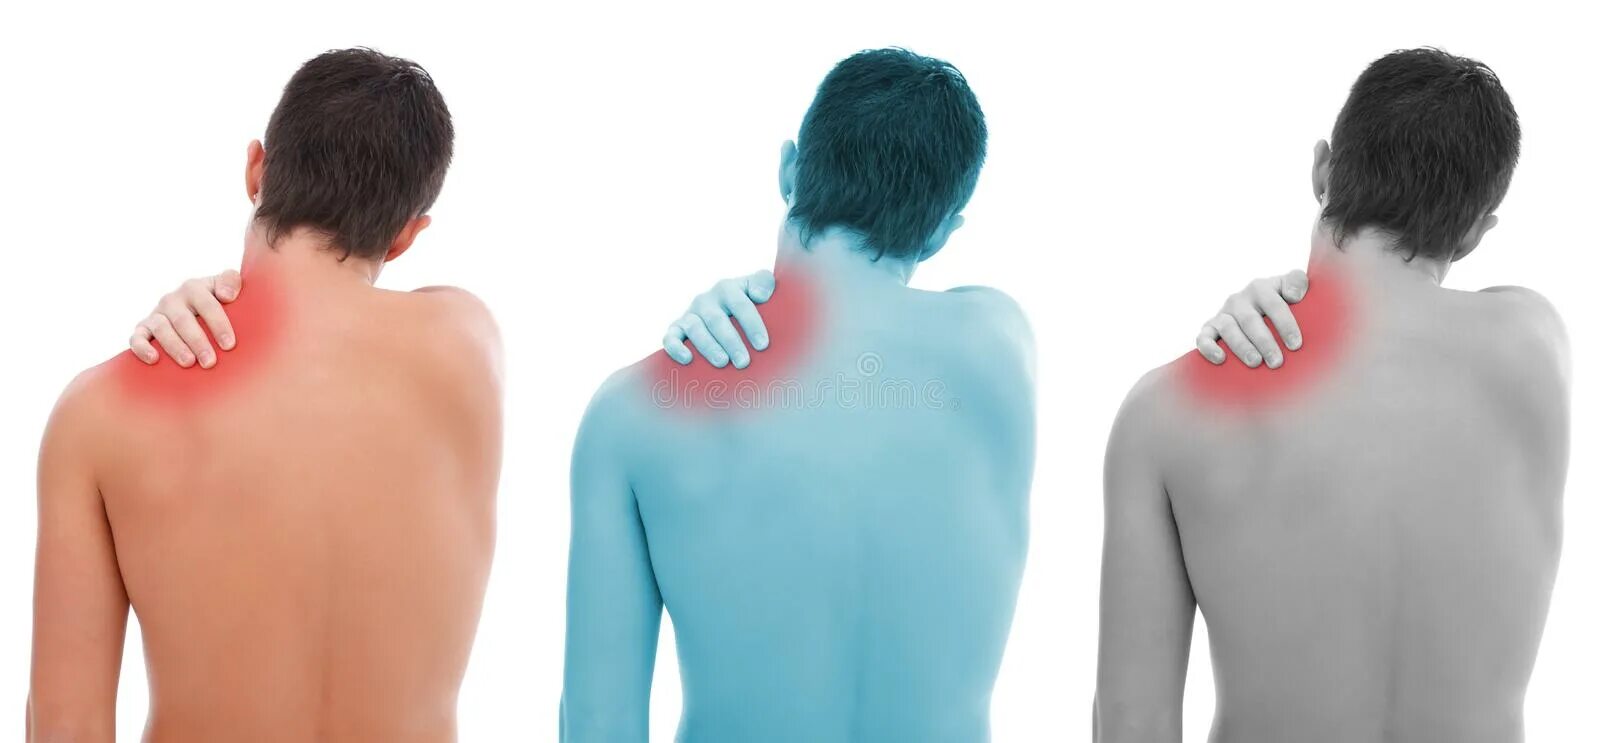 Ноющая боль в плече. Остеохондроз плечевого сустава. Плечевой остеохондроз. Плече лопаточный остеохондроз.